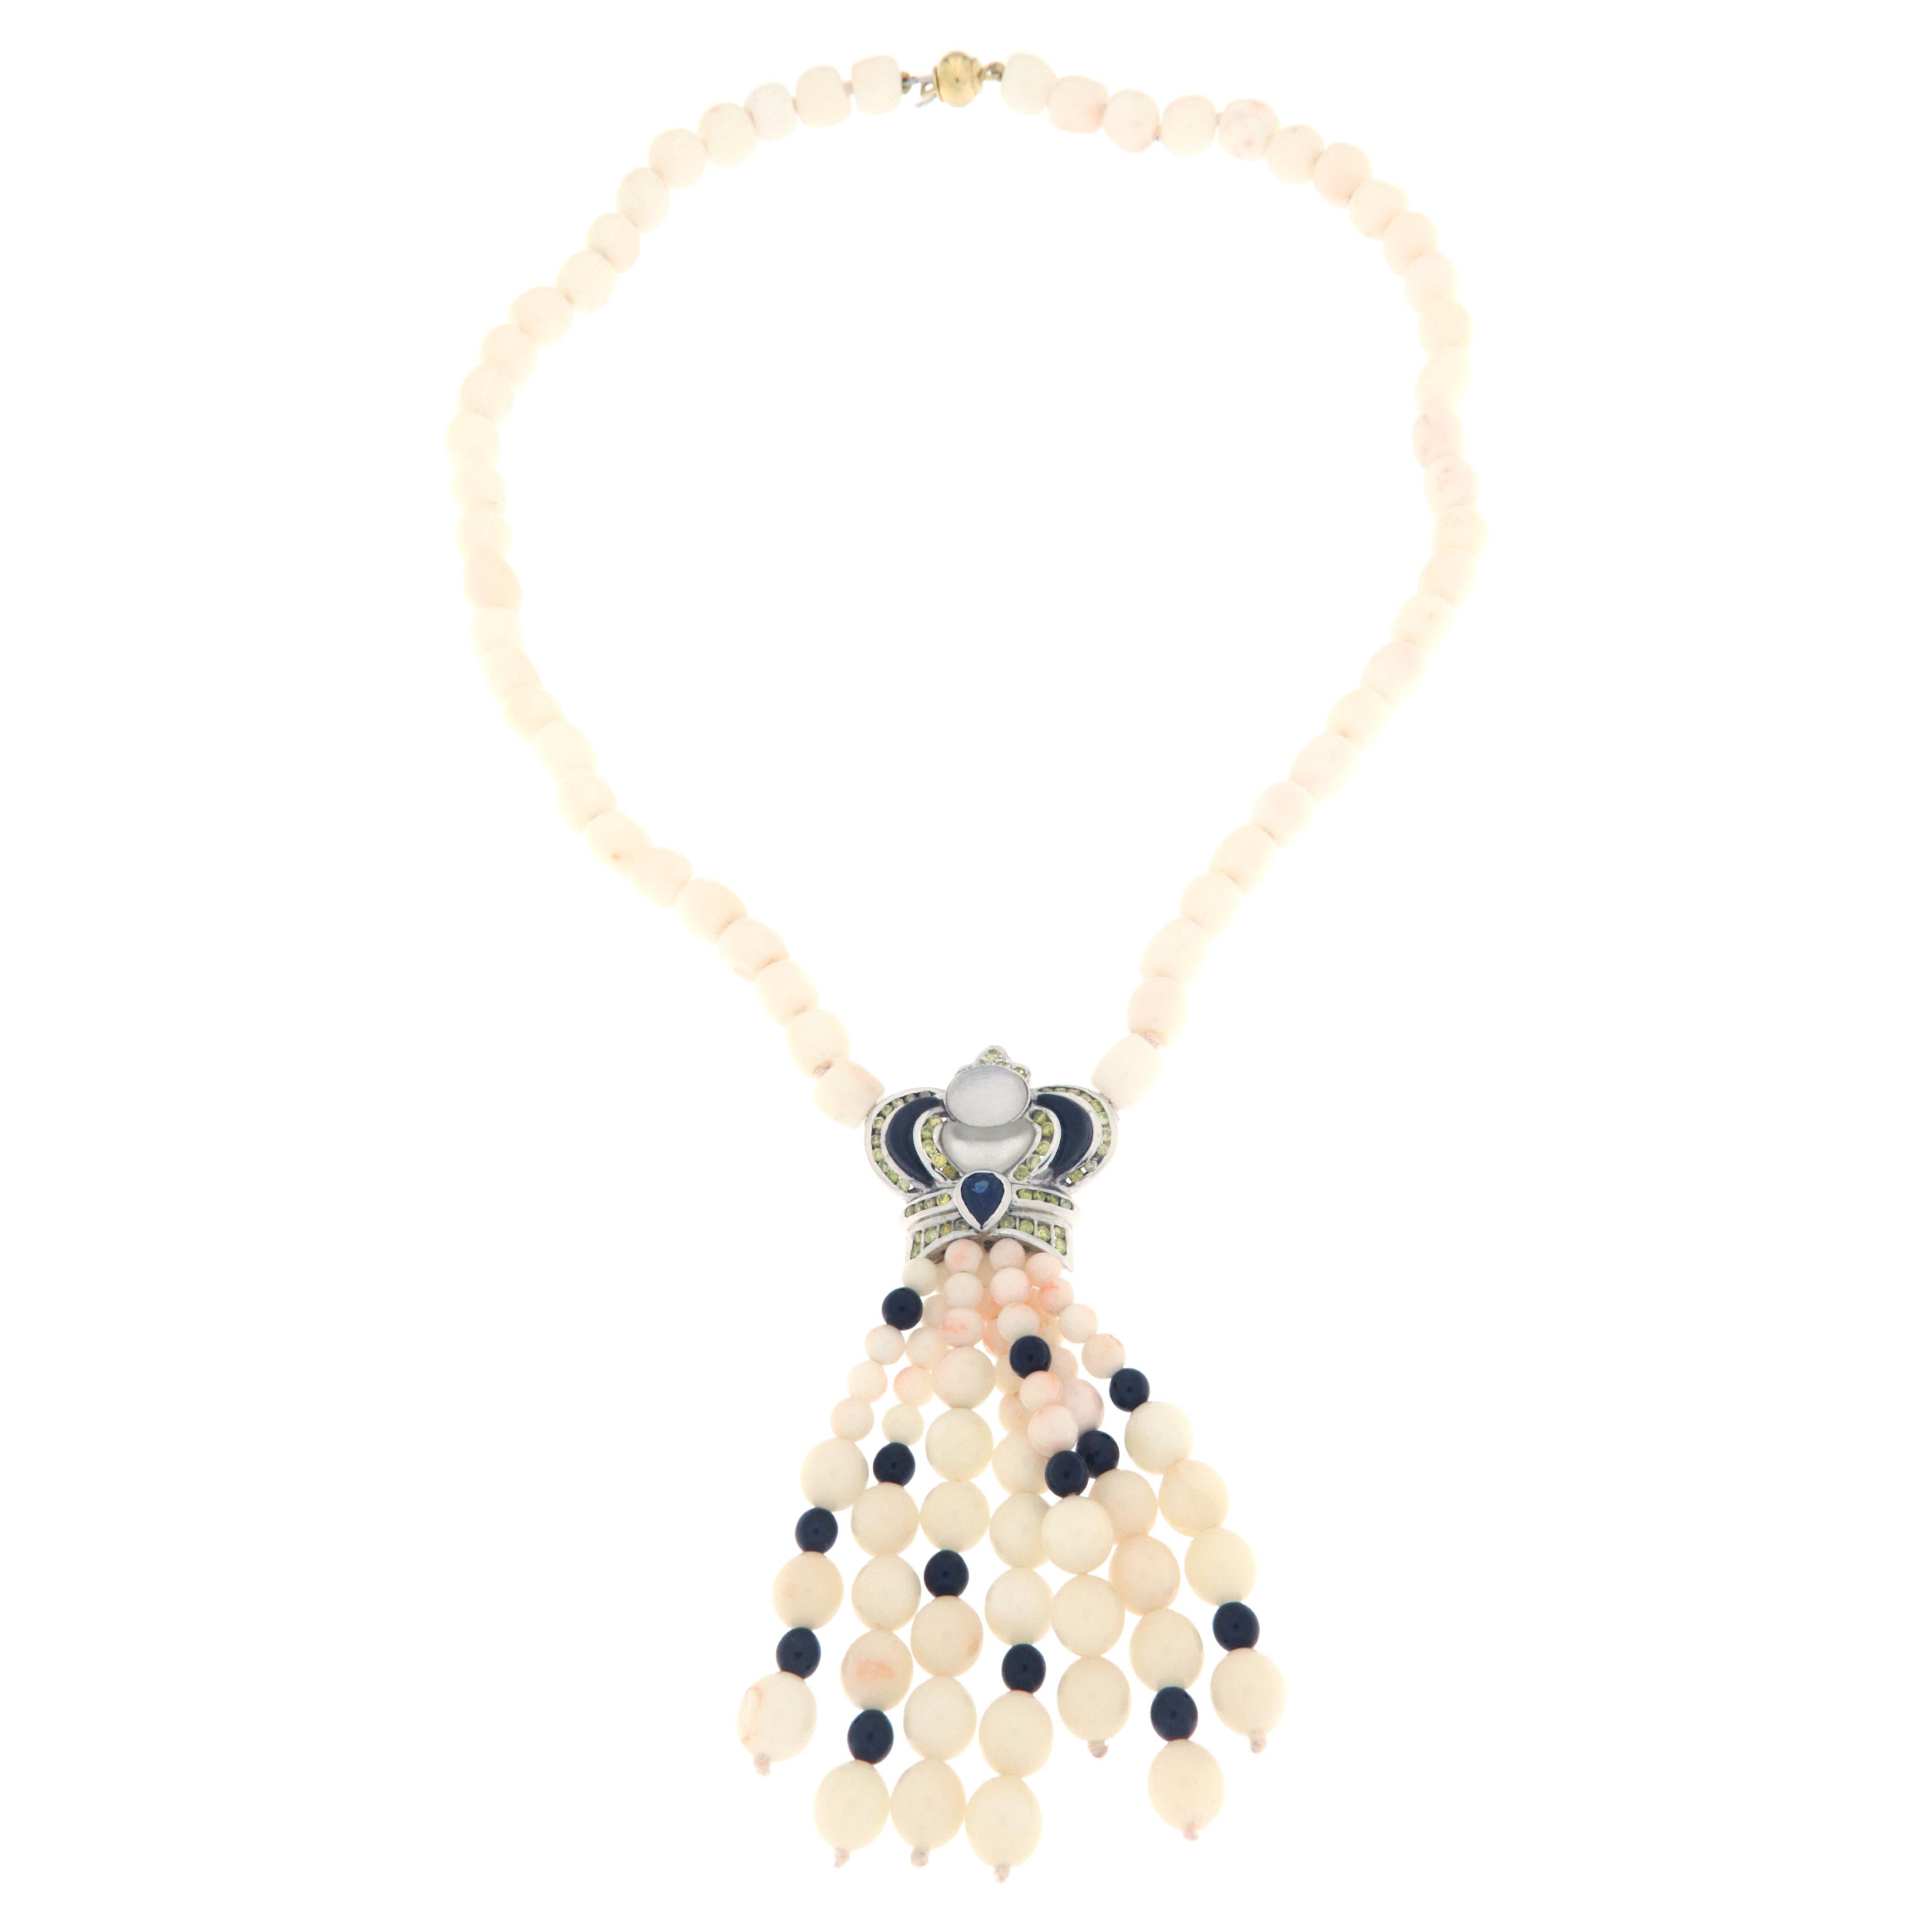 Collier pendentif en or blanc 18 carats avec diamants, saphirs et corail rose et blanc